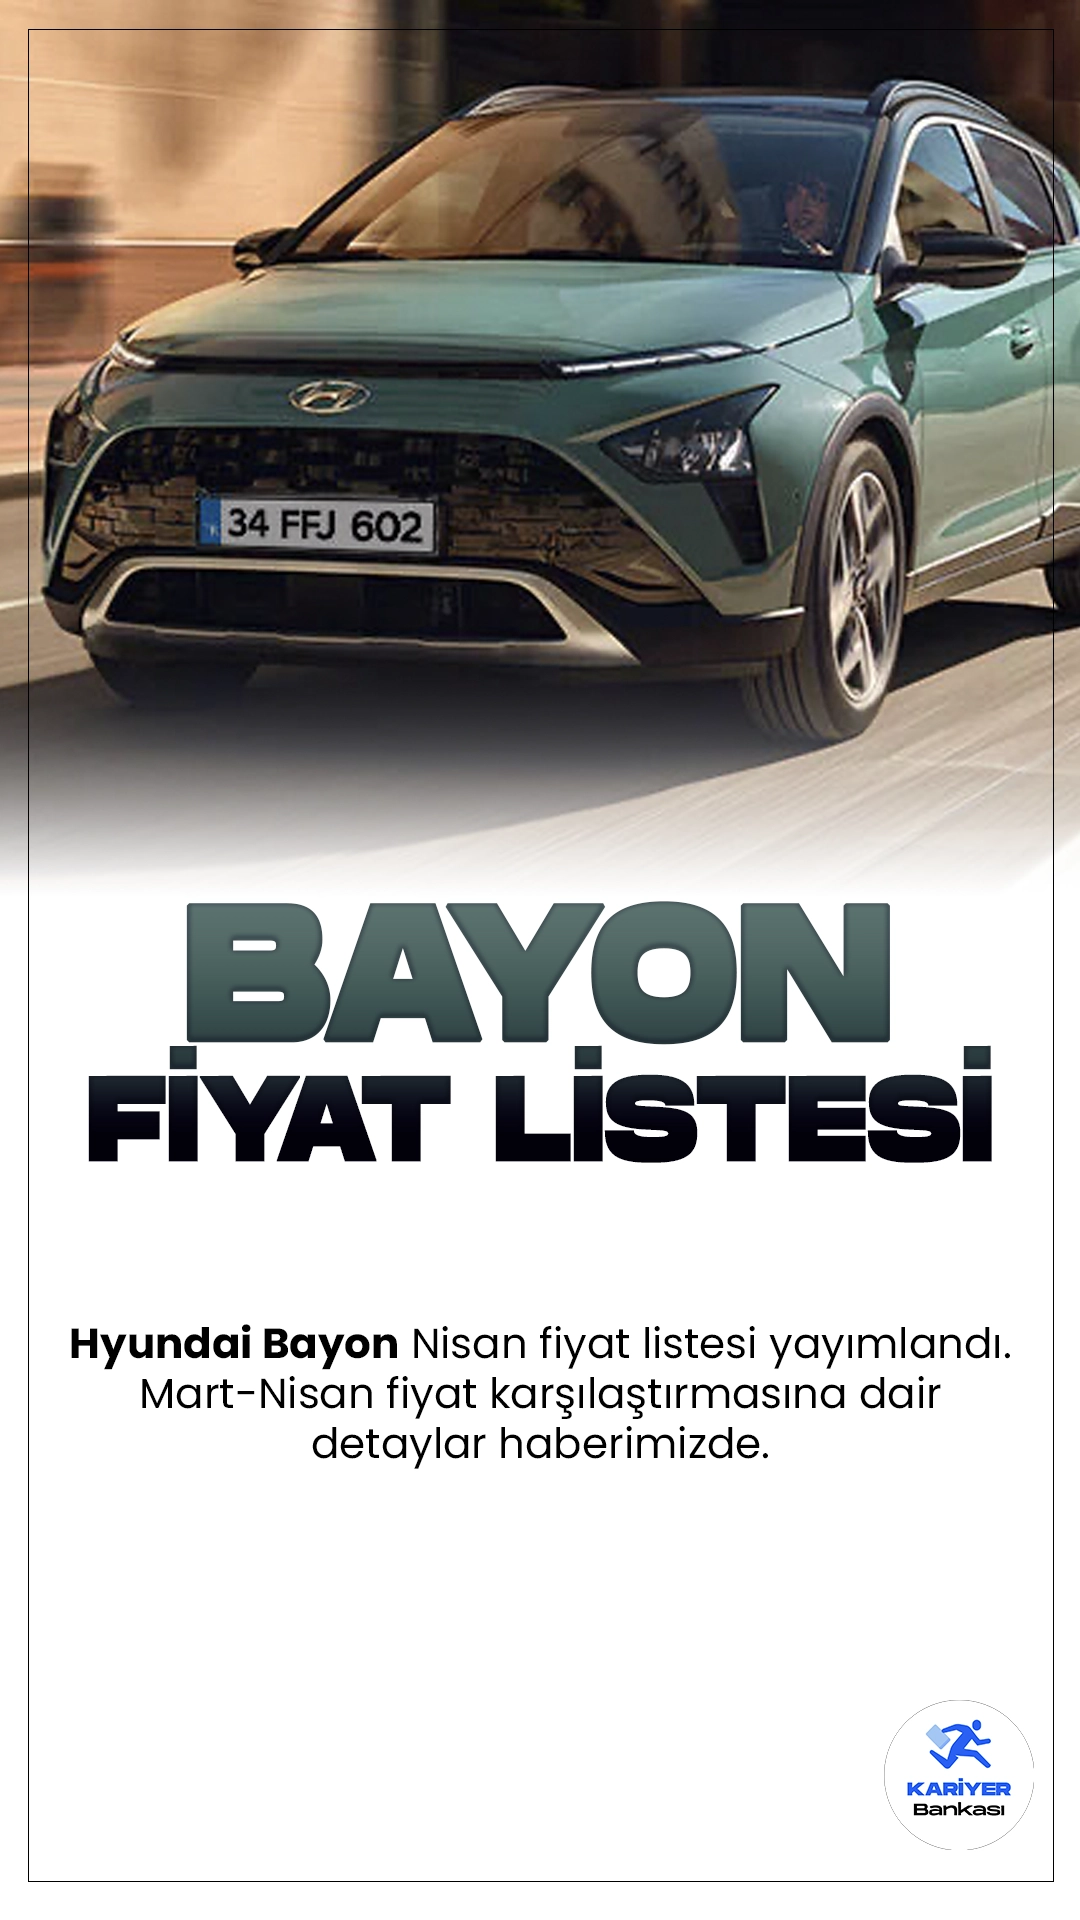 Hyundai Bayon Nisan 2024 Fiyat Listesi Yayımlandı.Hyundai, kompakt SUV segmentindeki varlığını güçlendirmek için yeni bir modelle karşımızda: Bayon. Güney Koreli otomotiv devi, pratik, şık ve güvenilir bir araç sunarak tüketicilerin beklentilerini karşılama hedefinde. Bayon, modern tasarımı, geniş iç mekanı ve çevik sürüşüyle dikkat çekiyor.